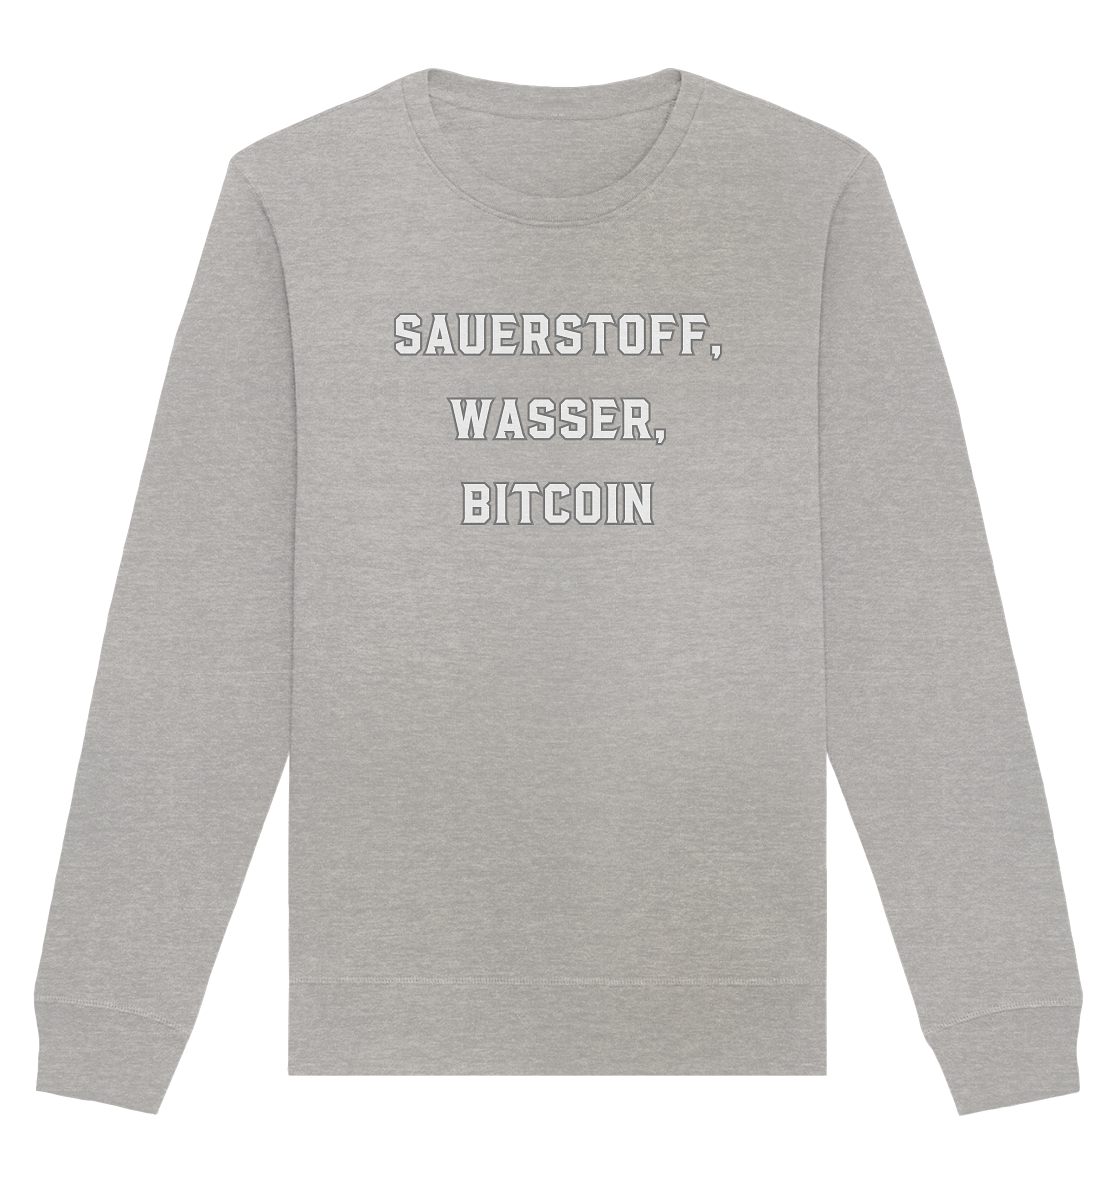 Sauerstoff, Wasser, Bitcoin - Organic Basic Unisex Sweatshirt